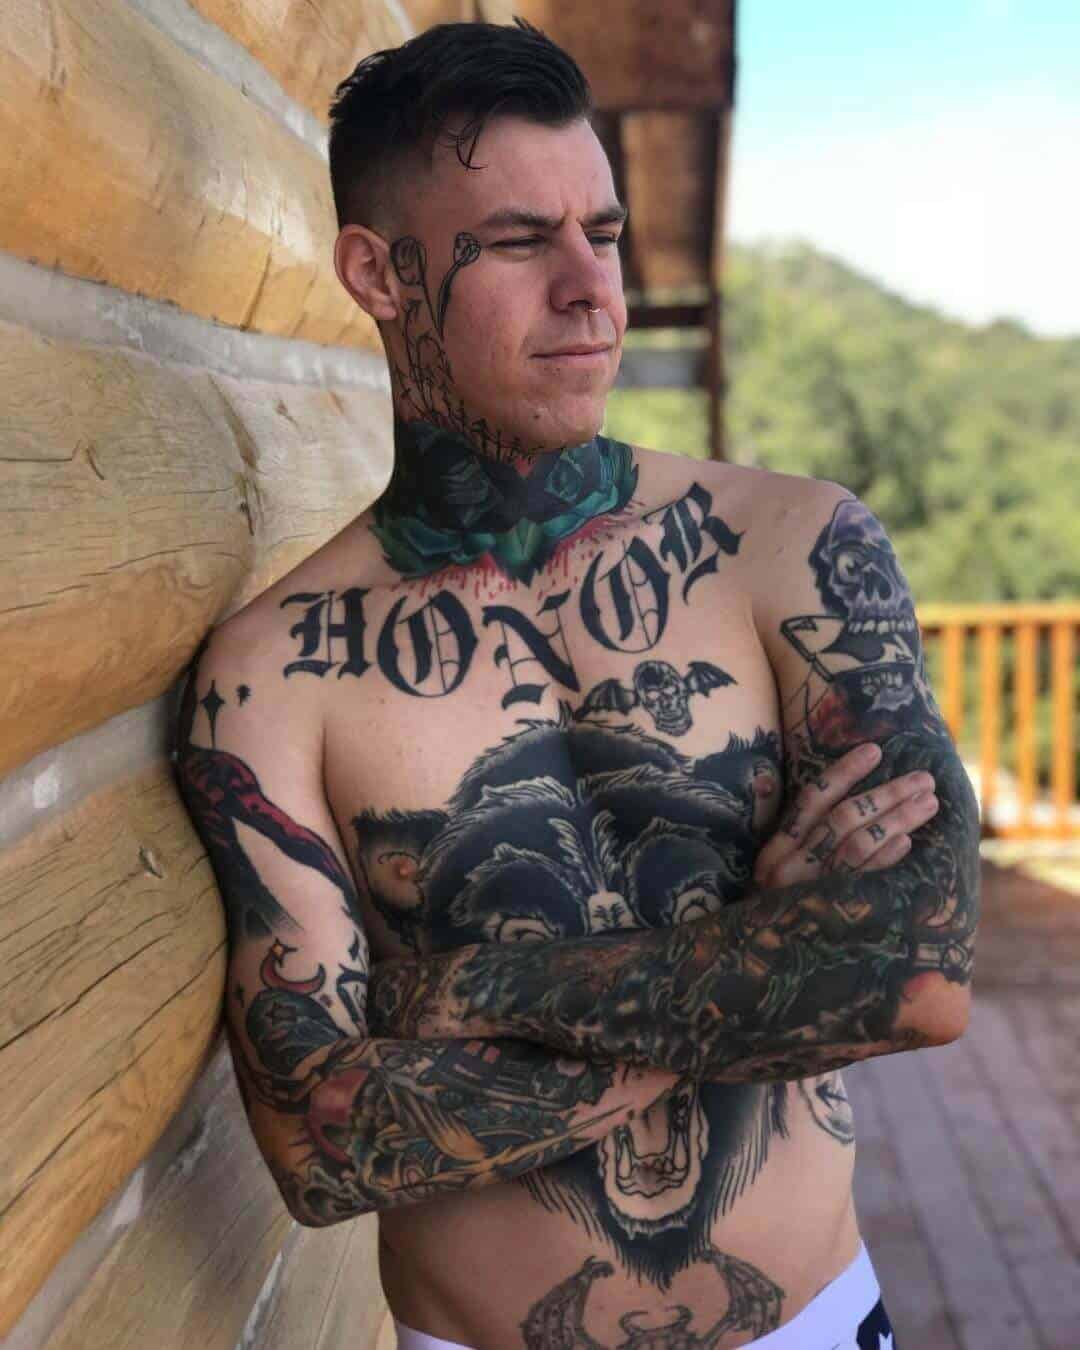 shayne smith honor tattoo